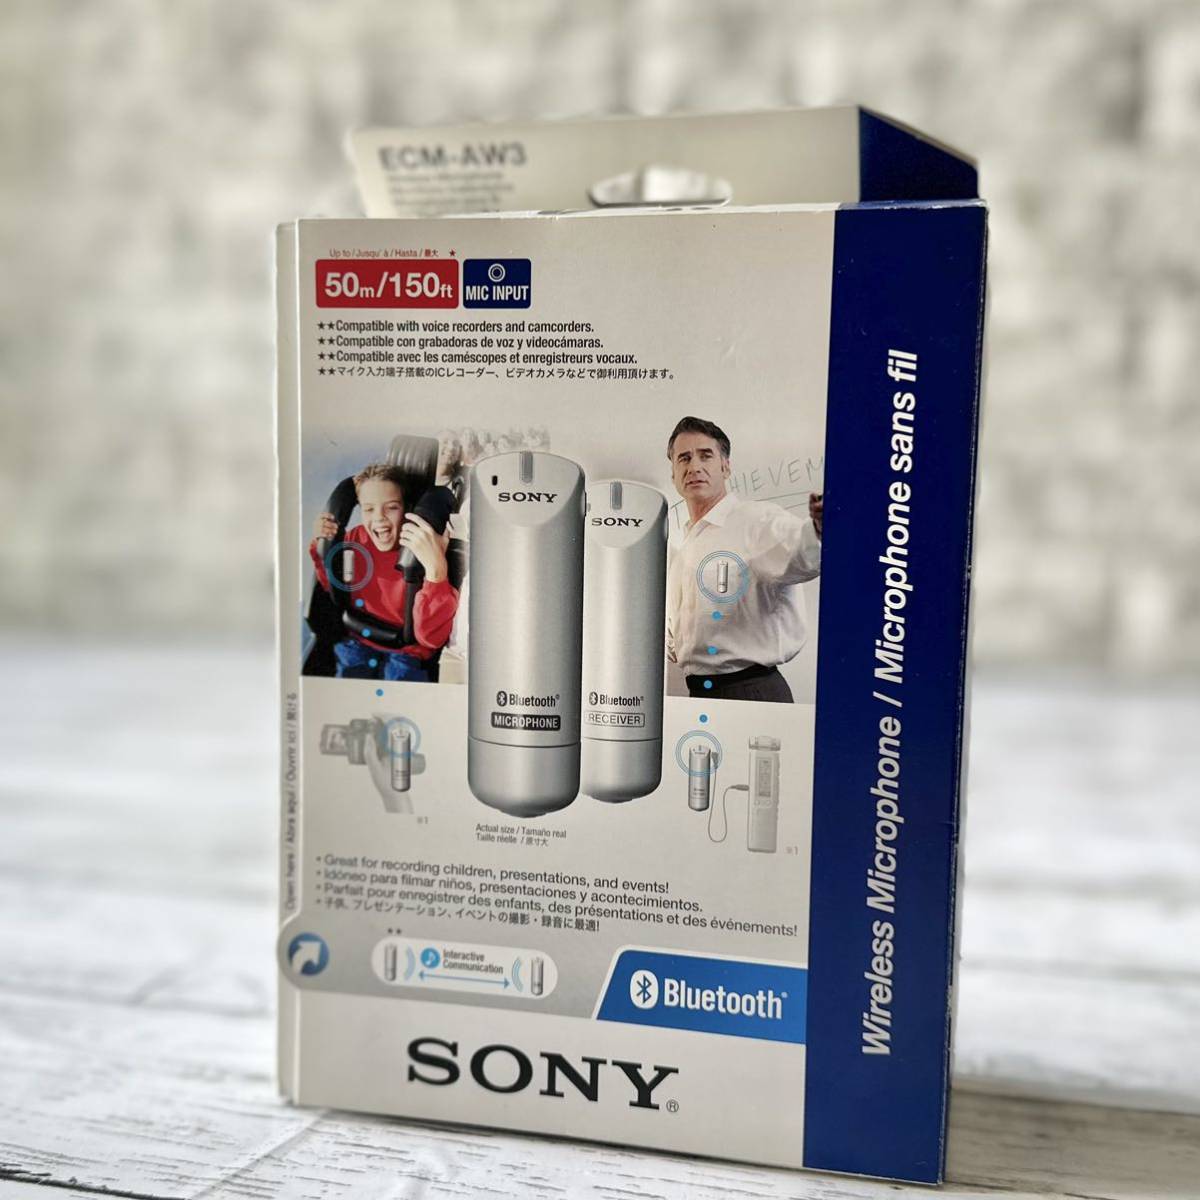 おすすめネット 送料無料 SONY Bluetoothワイヤレスマイクロホン ECM-AW3 ソニー